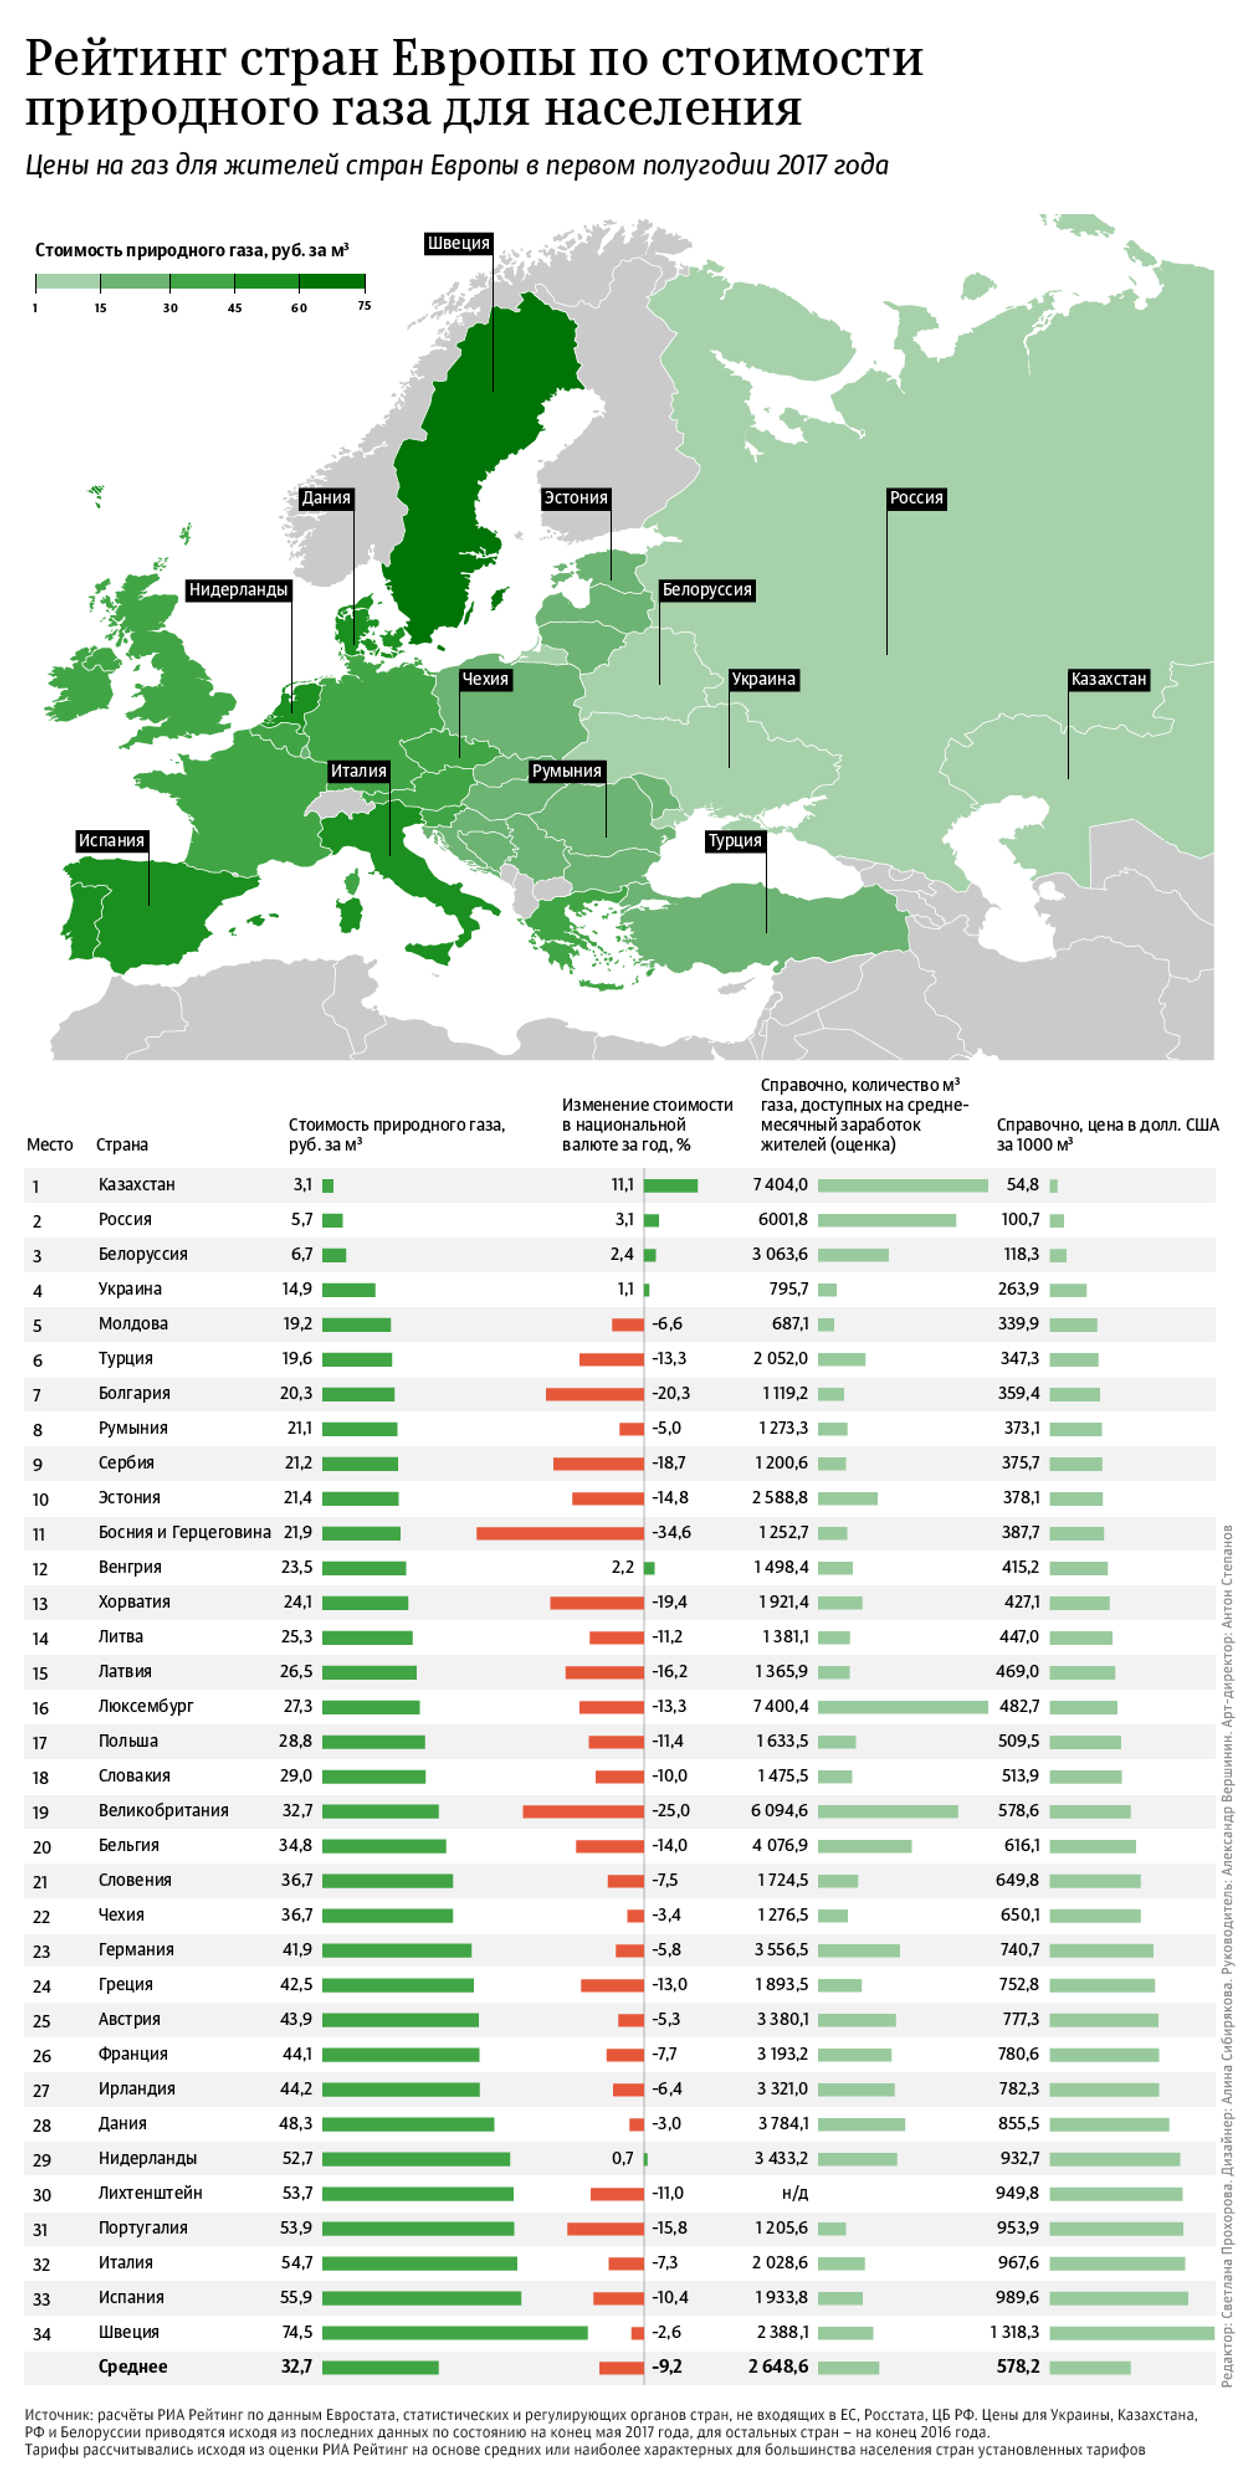 Рейтинг стран Европы по стоимости природного газа для населения